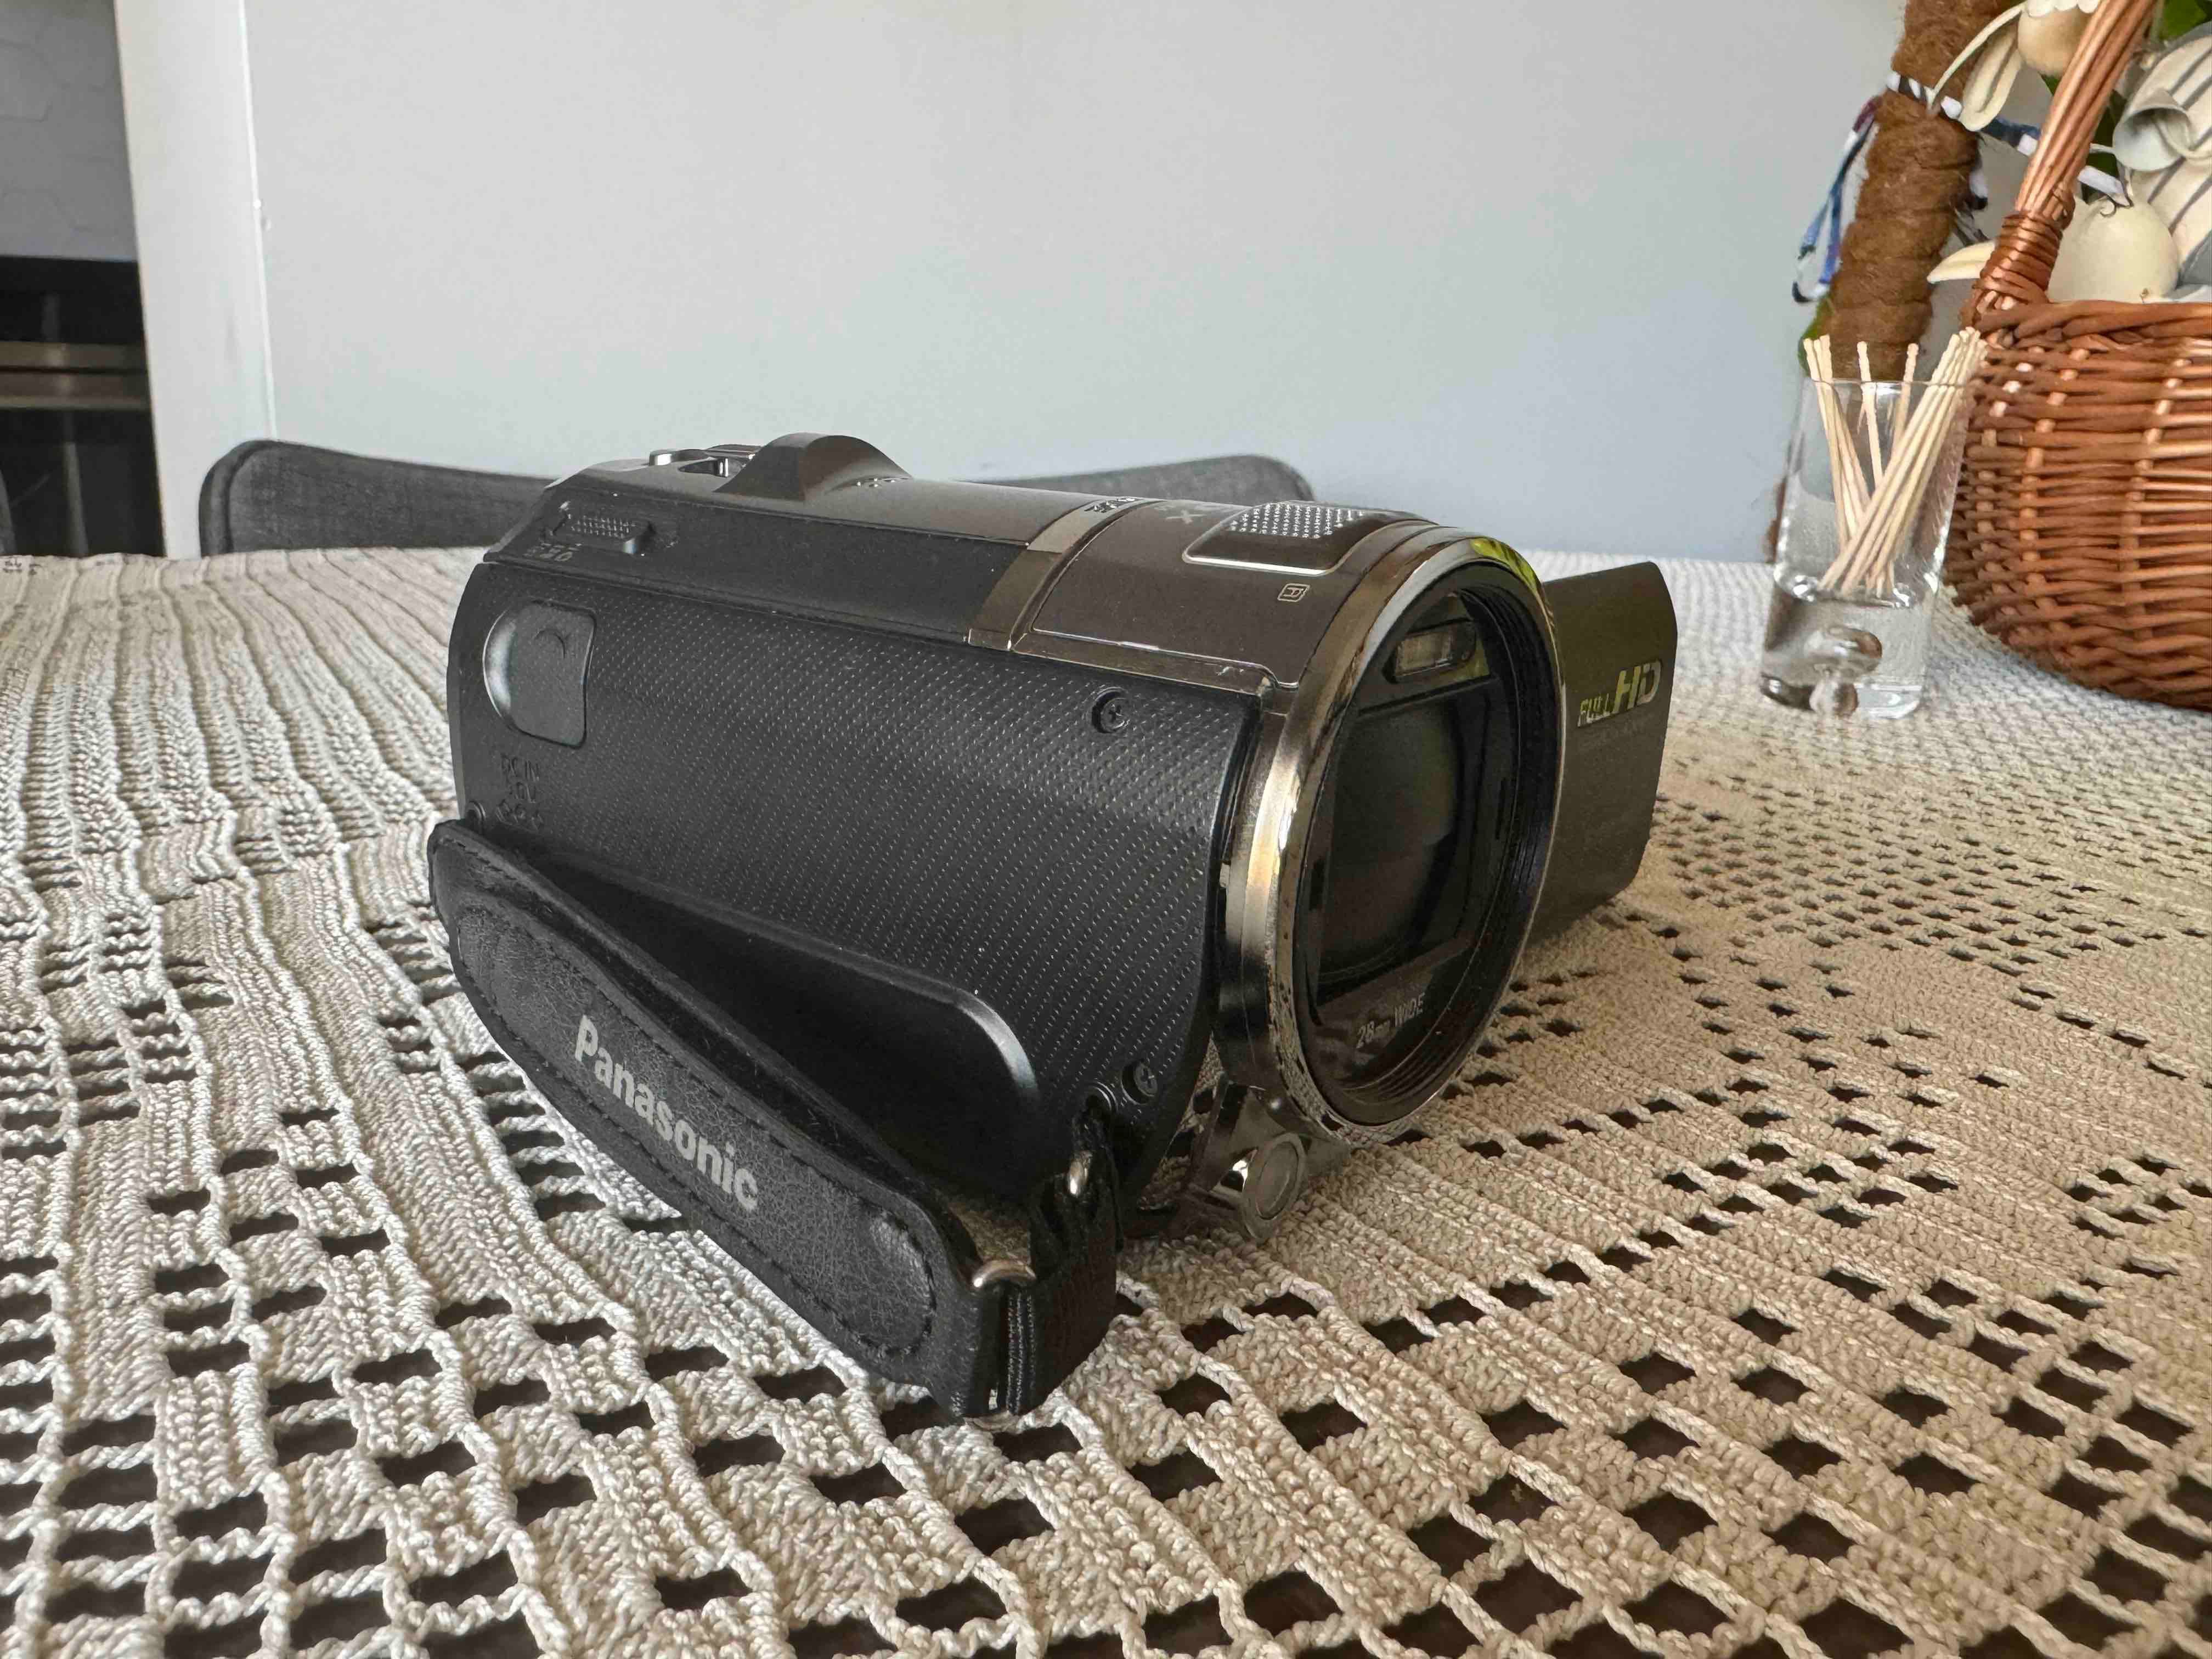 Kamera Panasonic HC-V700 - sprzedam